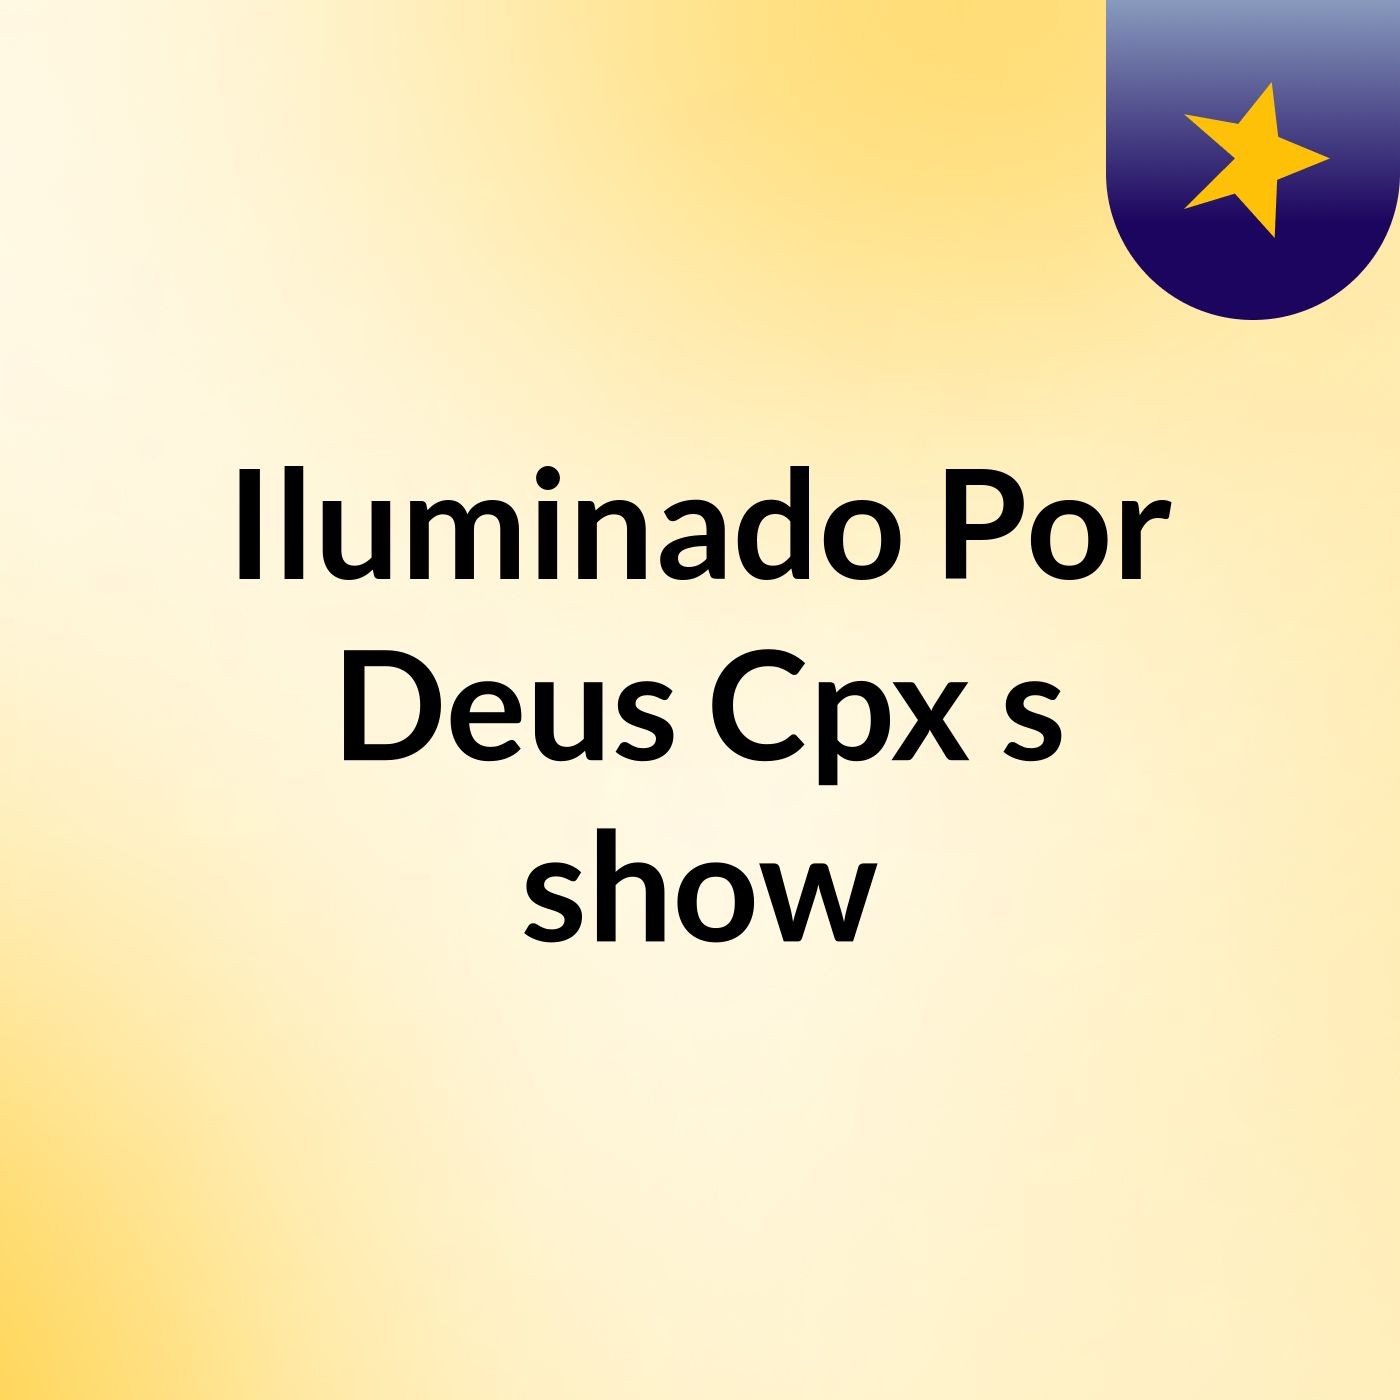 Iluminado Por Deus Cpx's show